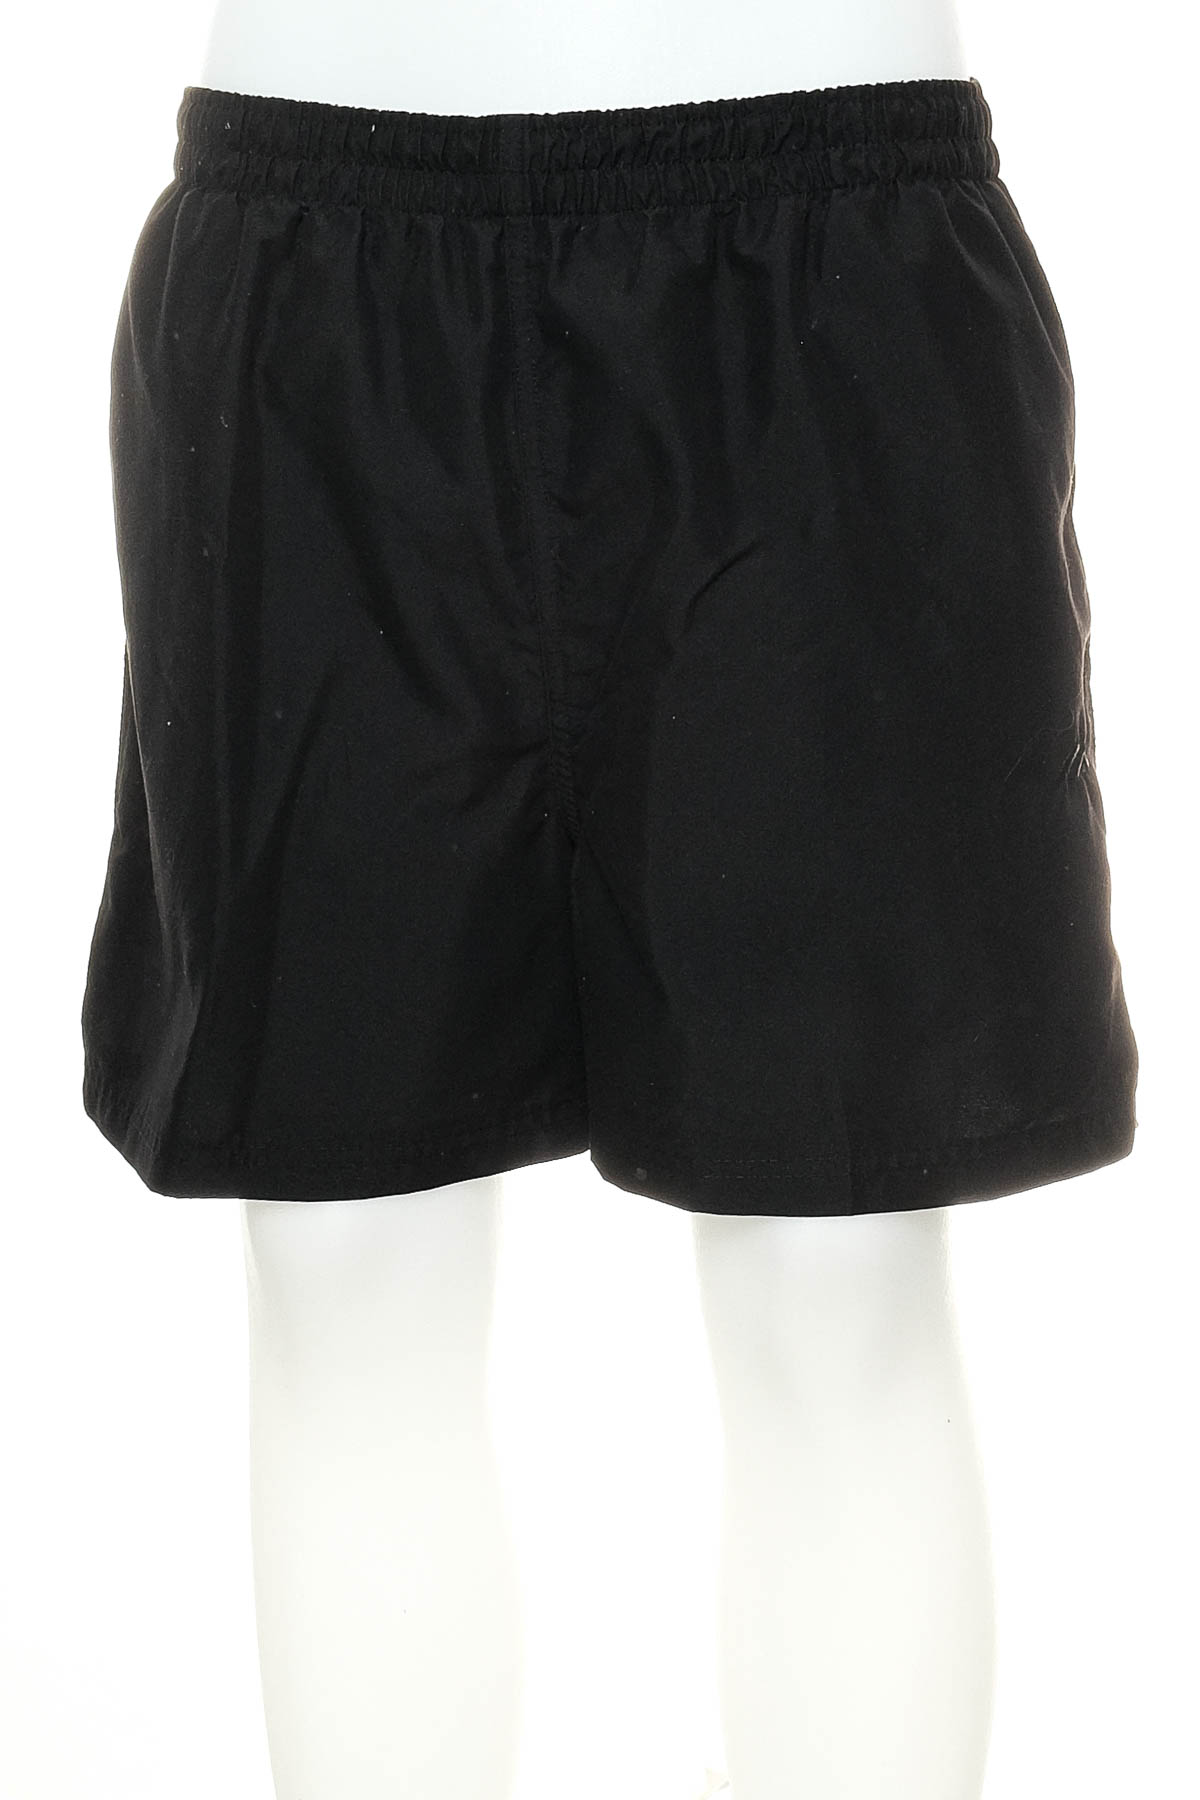 Men's shorts - Active - 0